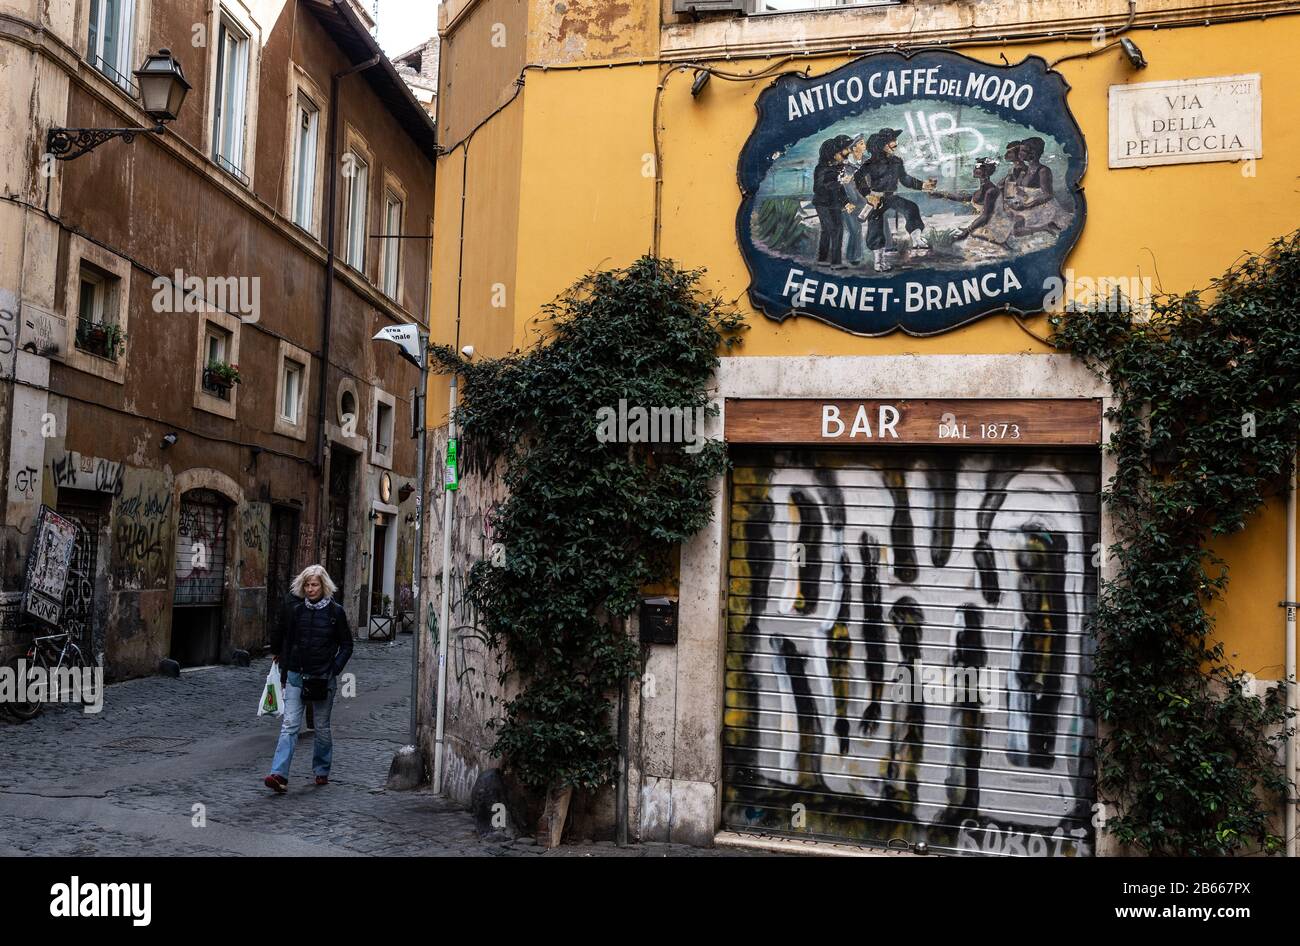 Trastevere, à Rome, l'un des quartiers les plus touristiques de la ville, a déserté en raison de l'épidémie de Coronavirus qui touche l'Italie. Banque D'Images